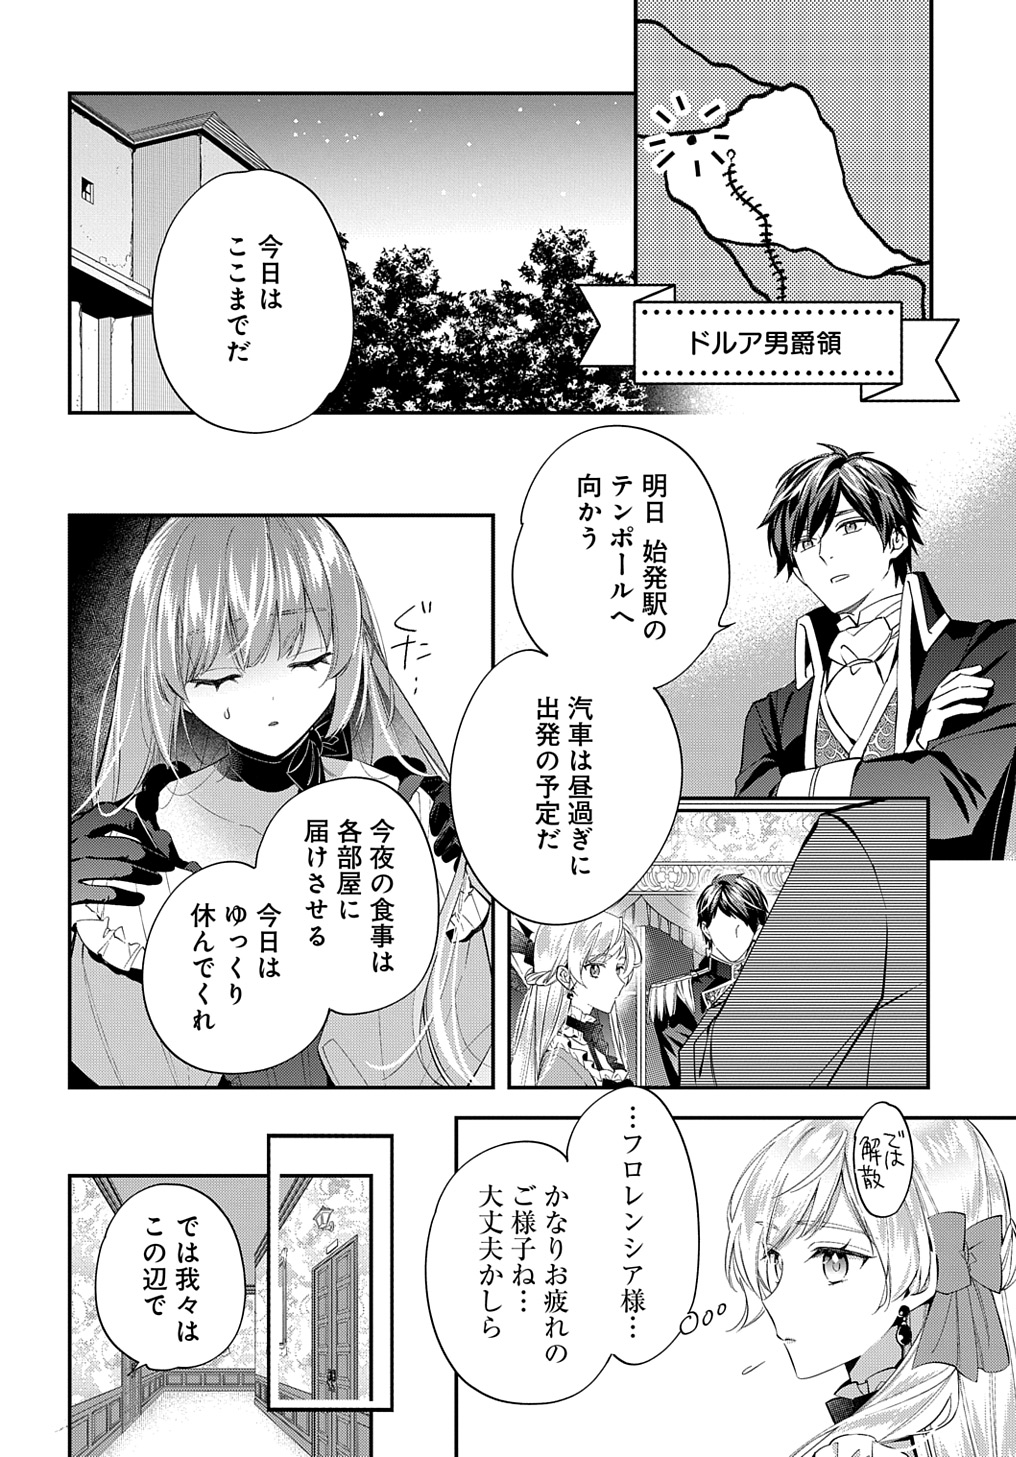 Outaishi ni Konyaku Hakisareta no de, Mou Baka no Furi wa Yameyou to Omoimasu - Chapter 23 - Page 14